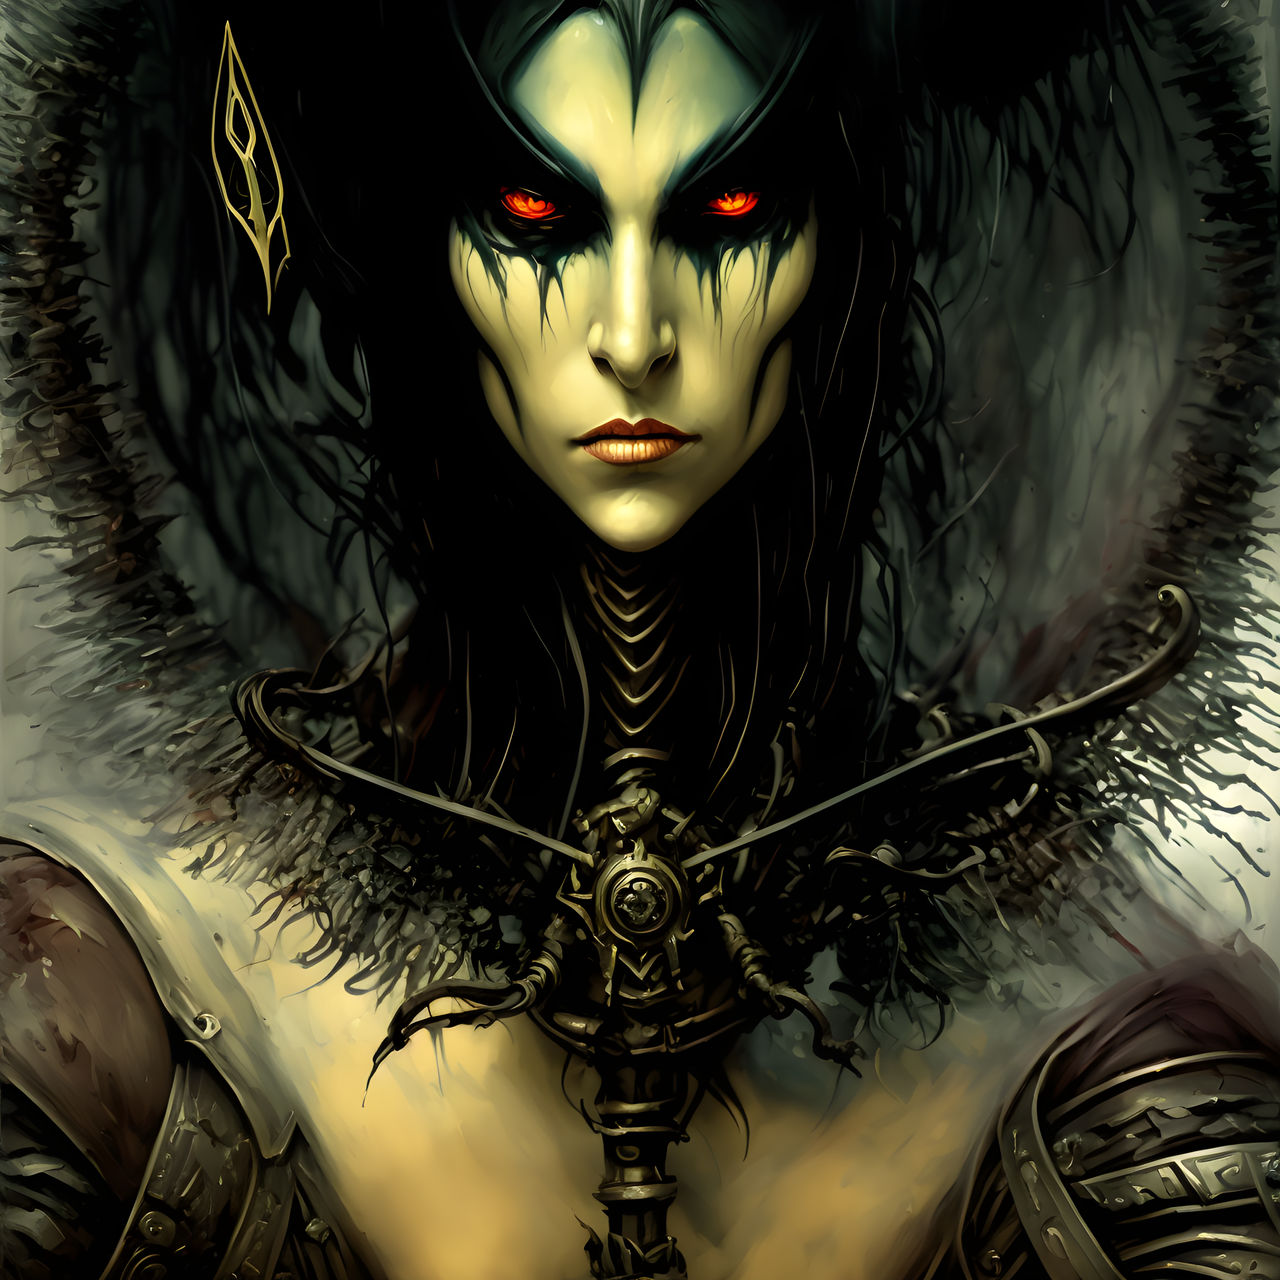 Warhammer, Malus Darkblade by Art-by-Arkh on DeviantArt